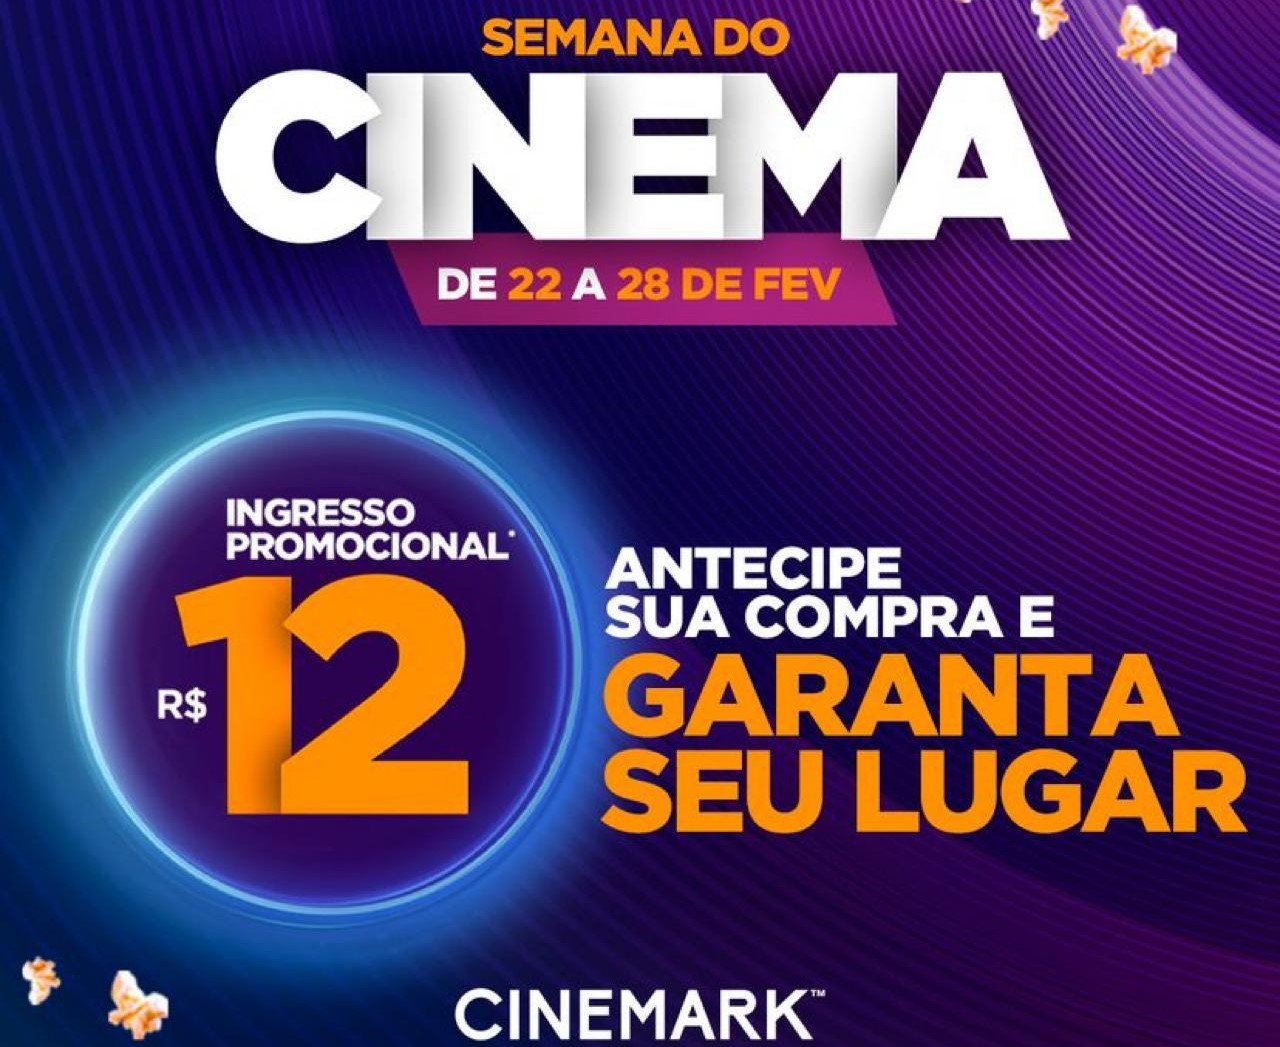 Semana do Cinema: Shopping Metrô Tucuruvi e Cinemark oferecem ingressos com desconto